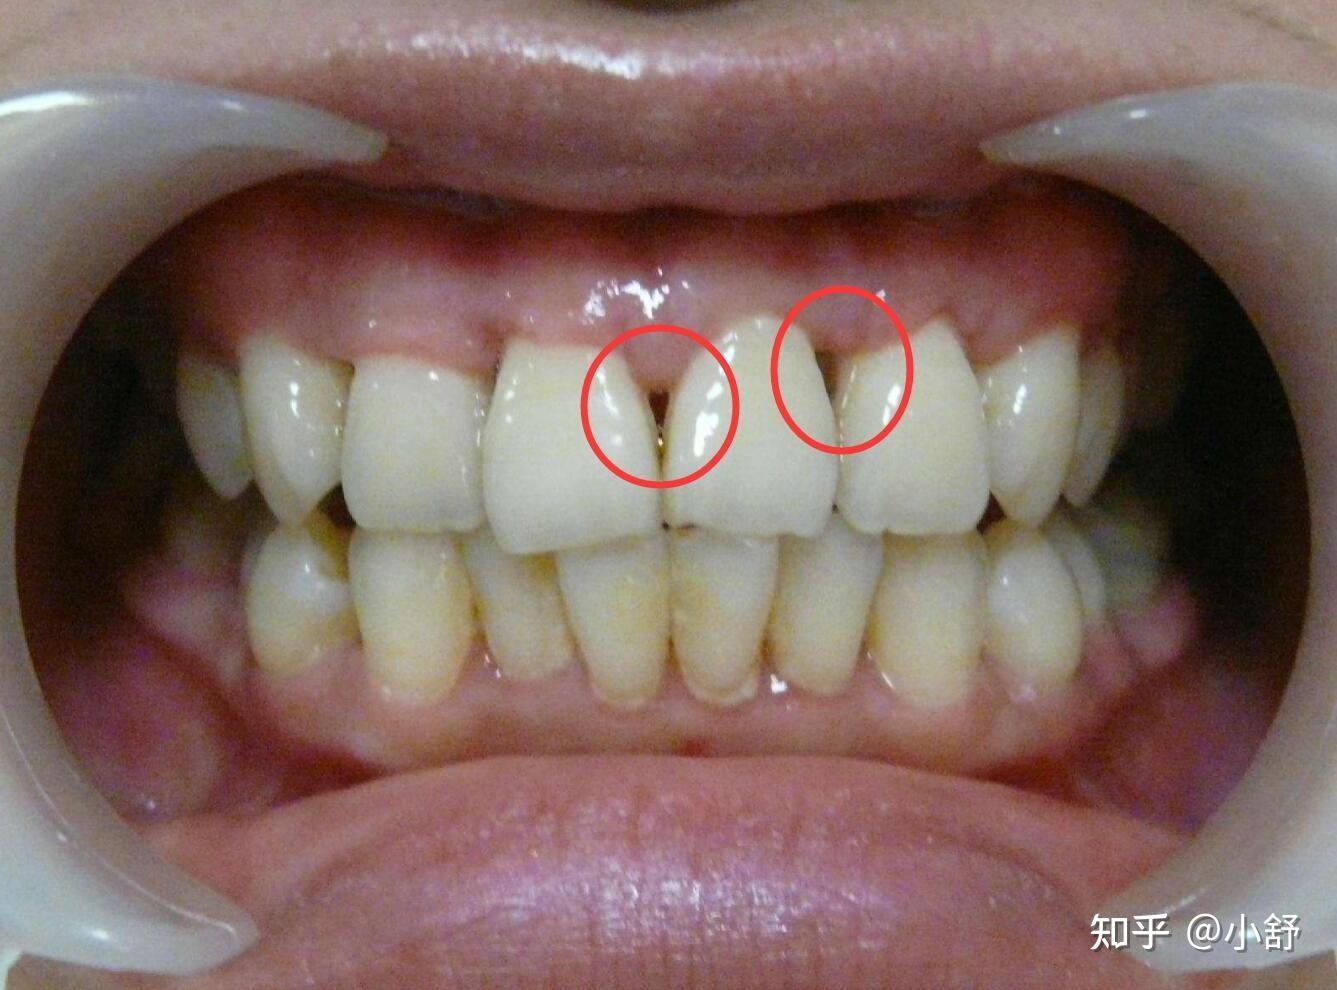 为什么会牙龈萎缩?